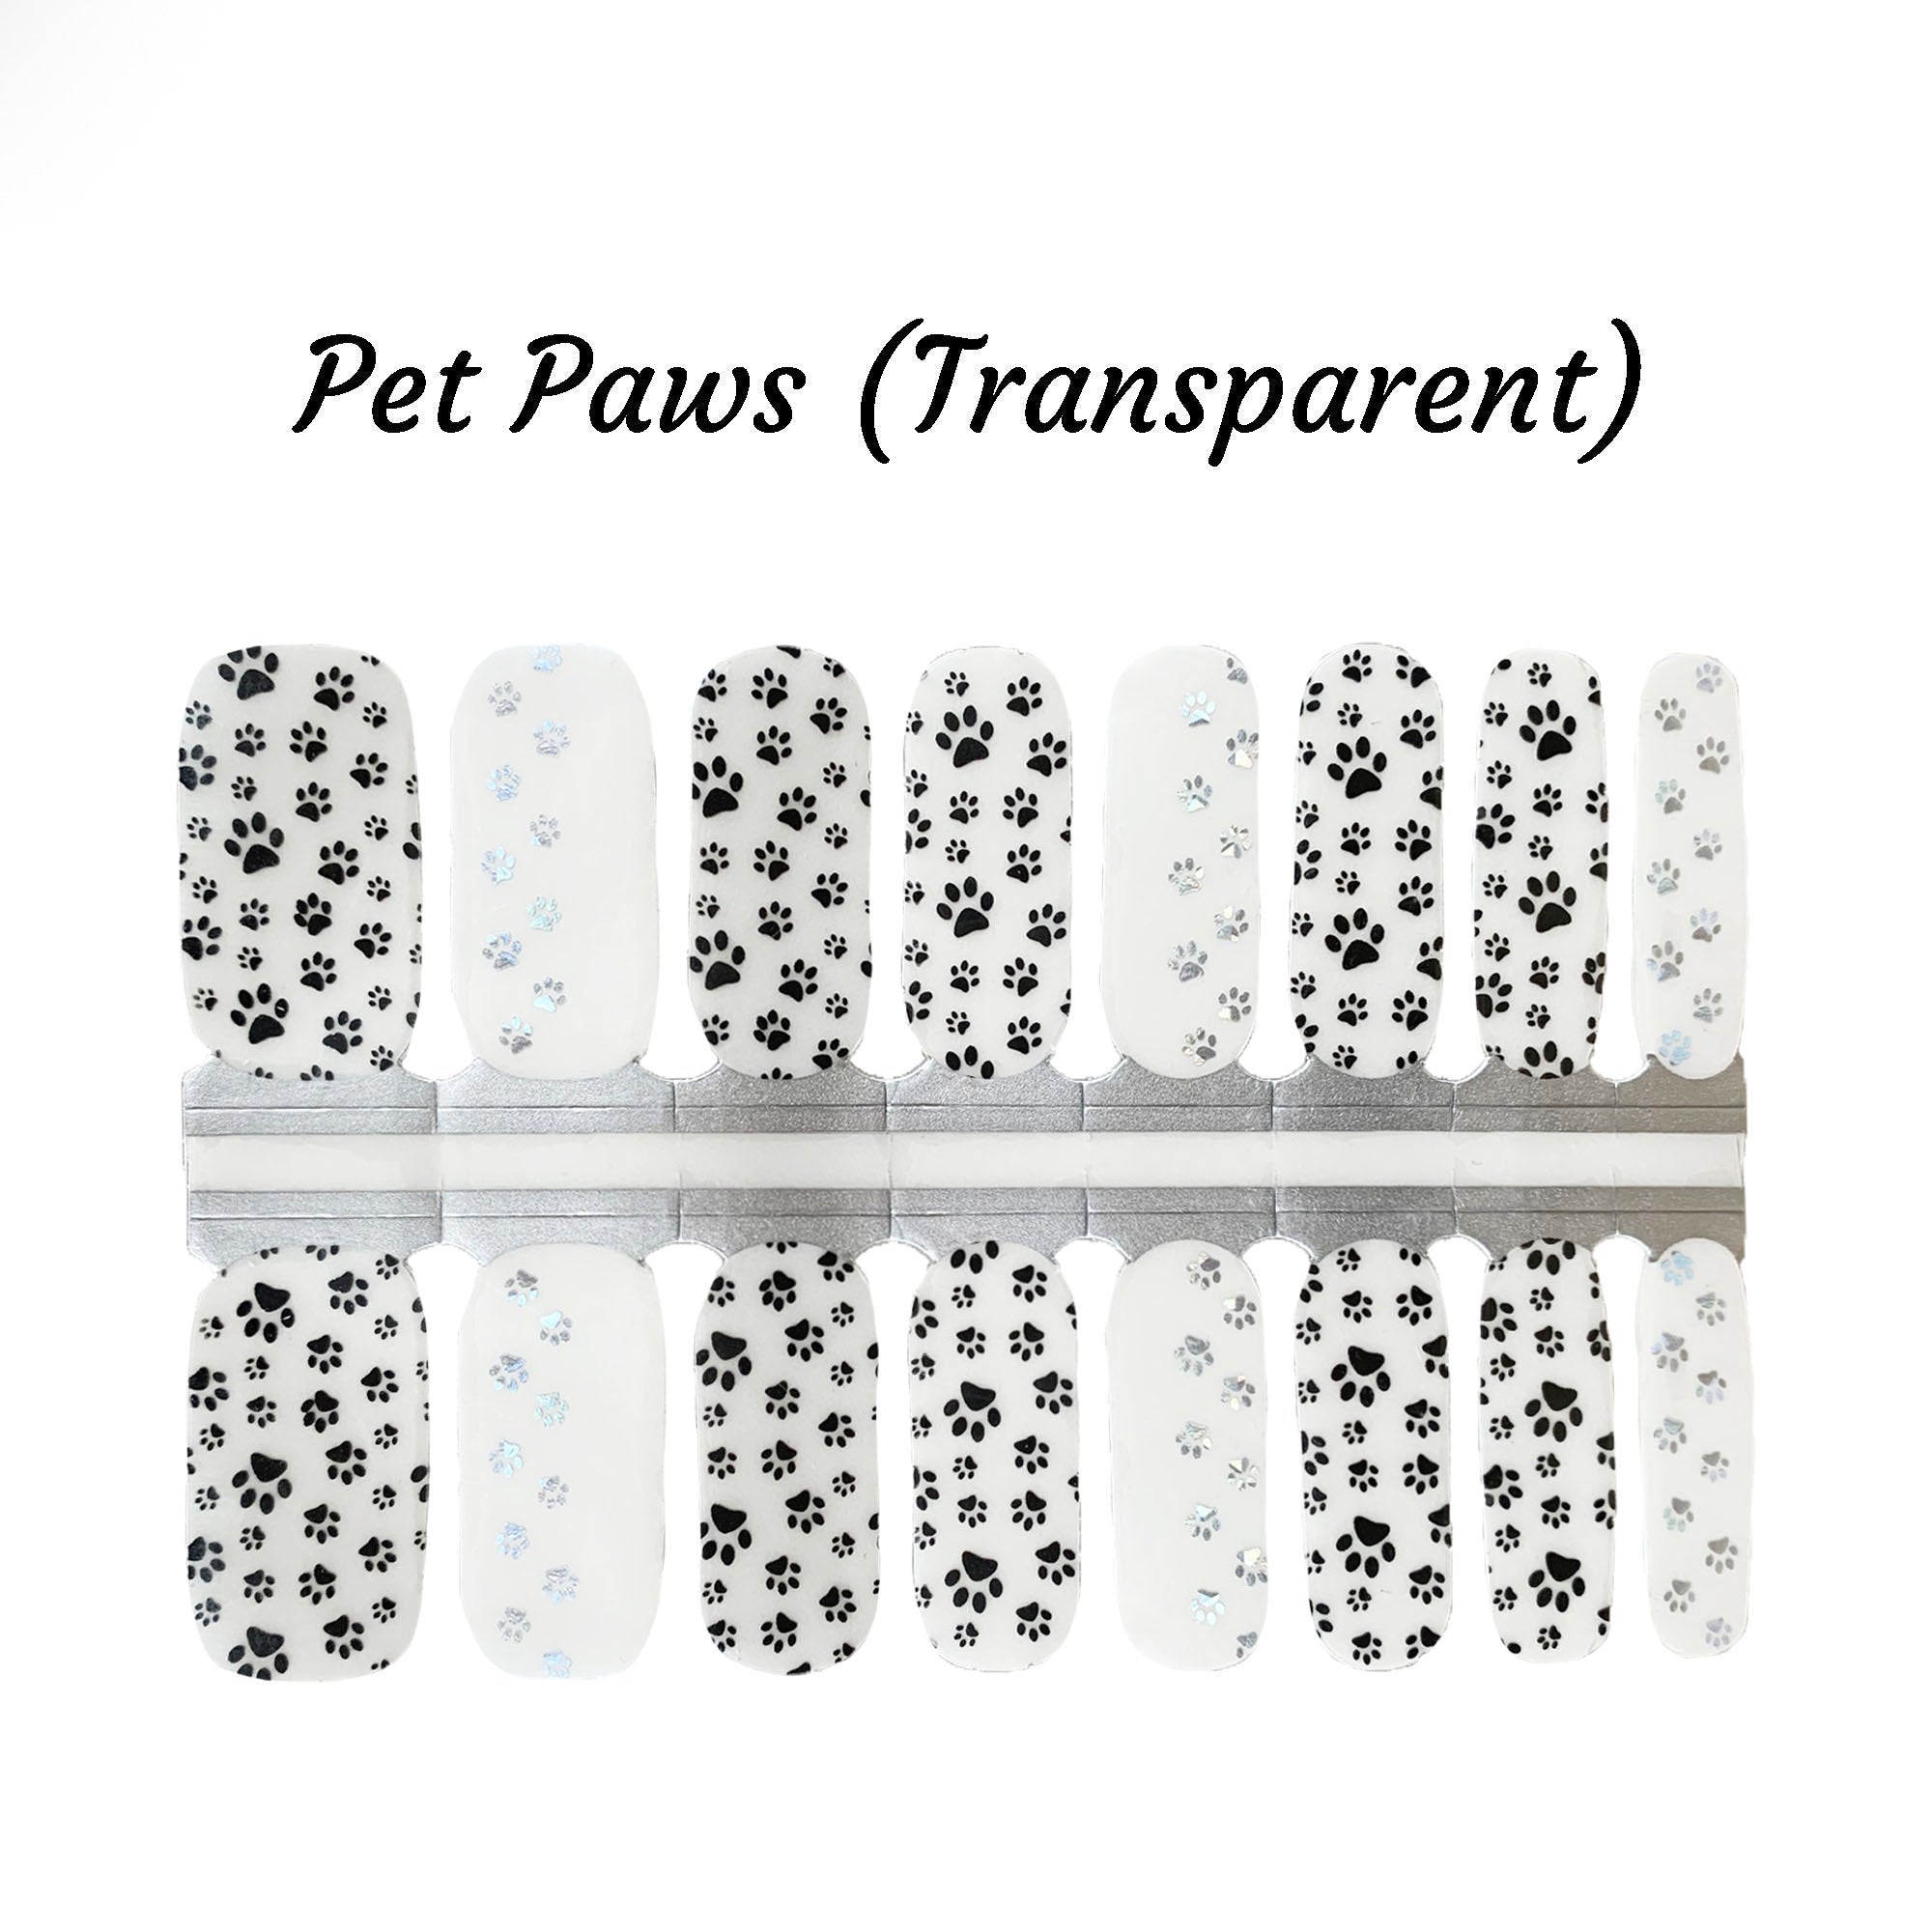 Pet Paws (Transparent)